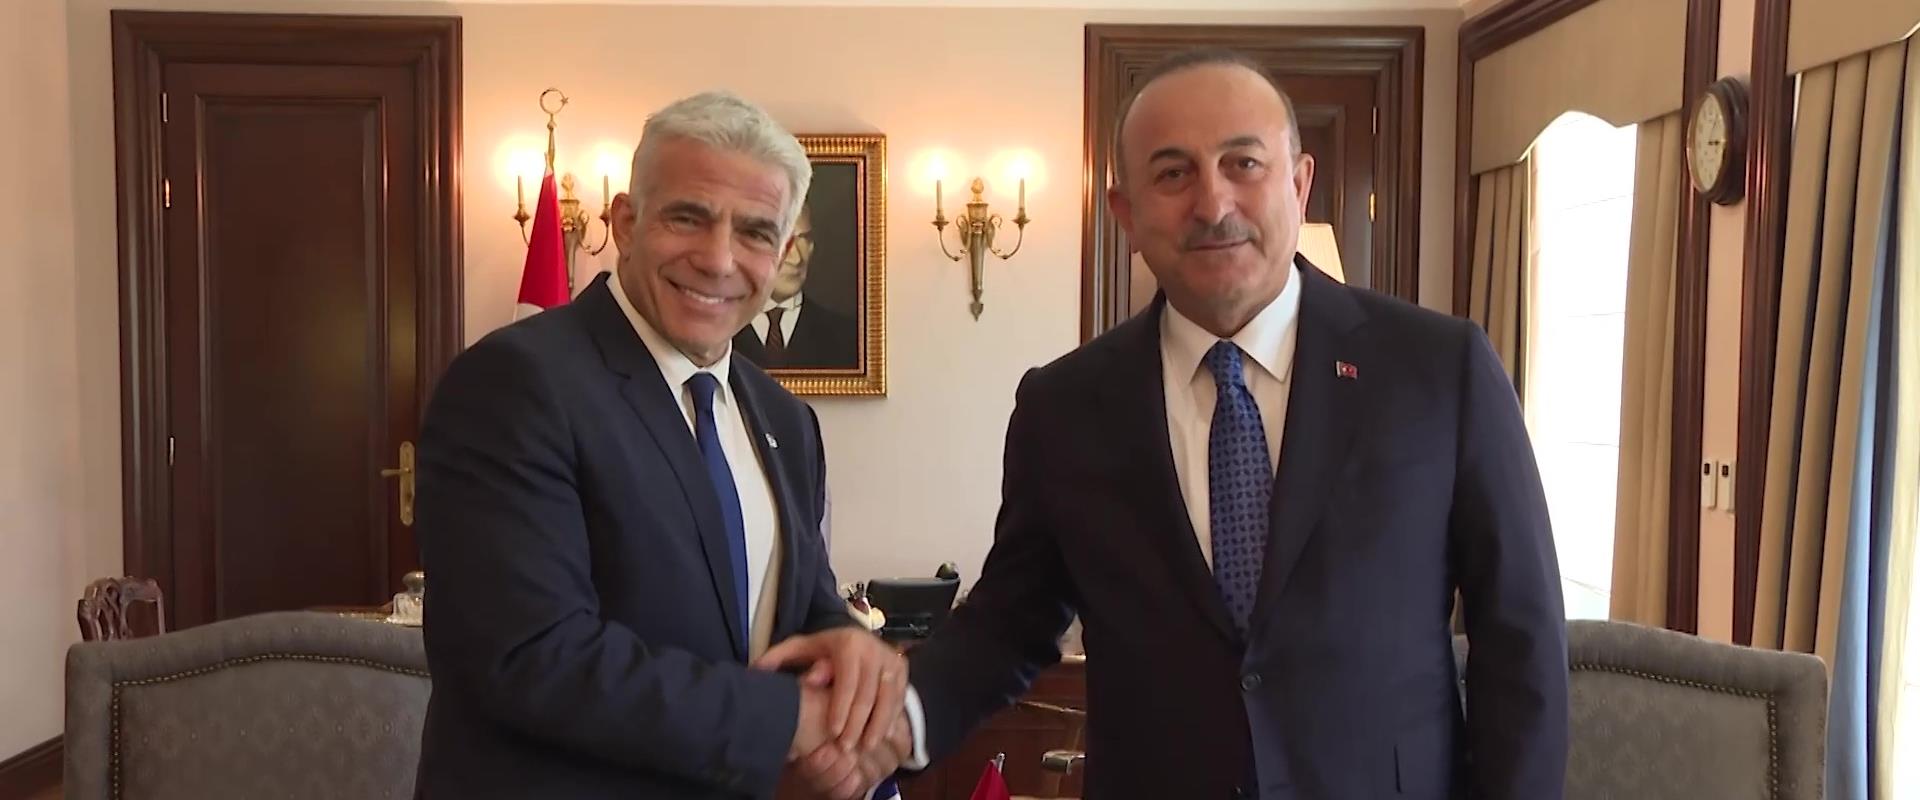 שר החוץ הטורקי צ'בושולו ושר החוץ לפיד, היום בטורקי